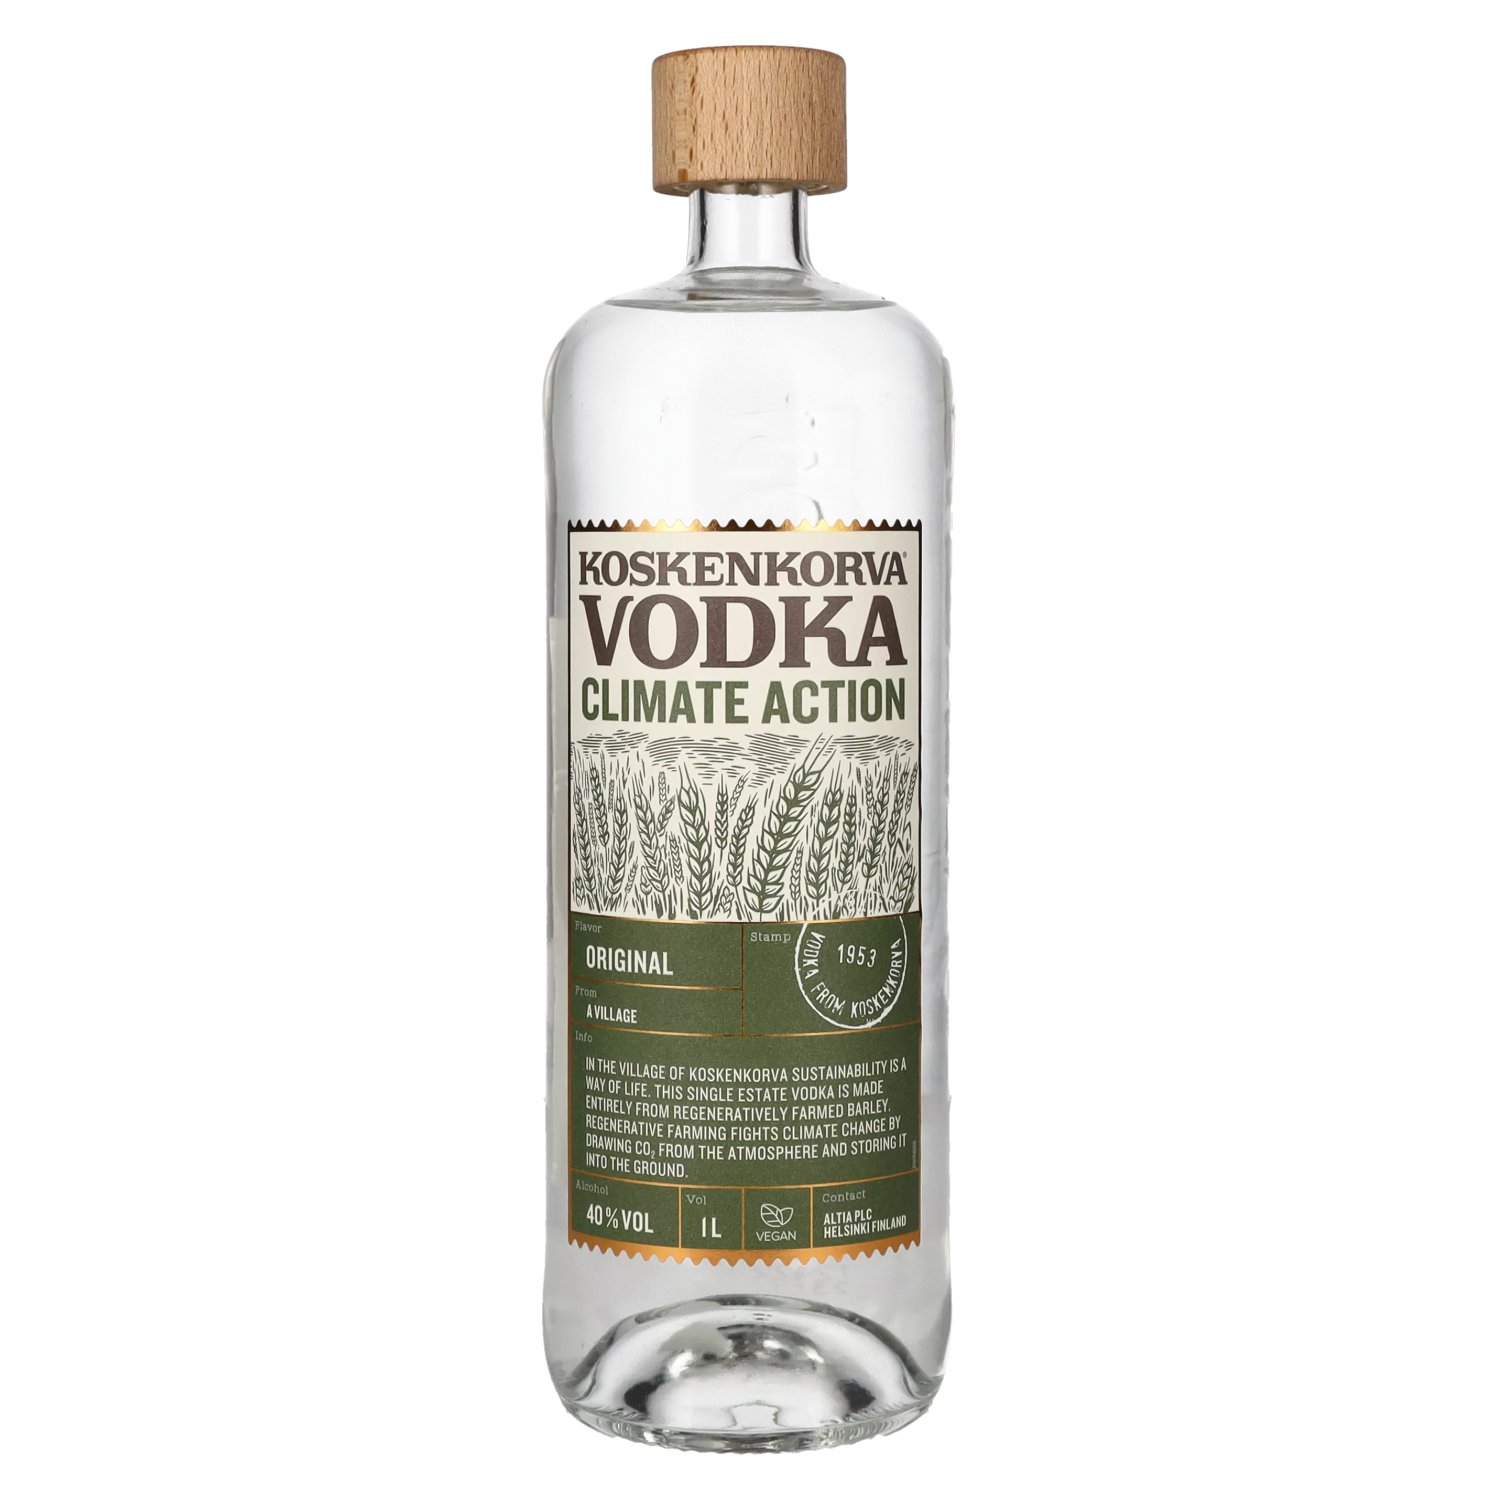 Koskenkorva Vodka Climate Action ORIGINAL 1l 40% Vol